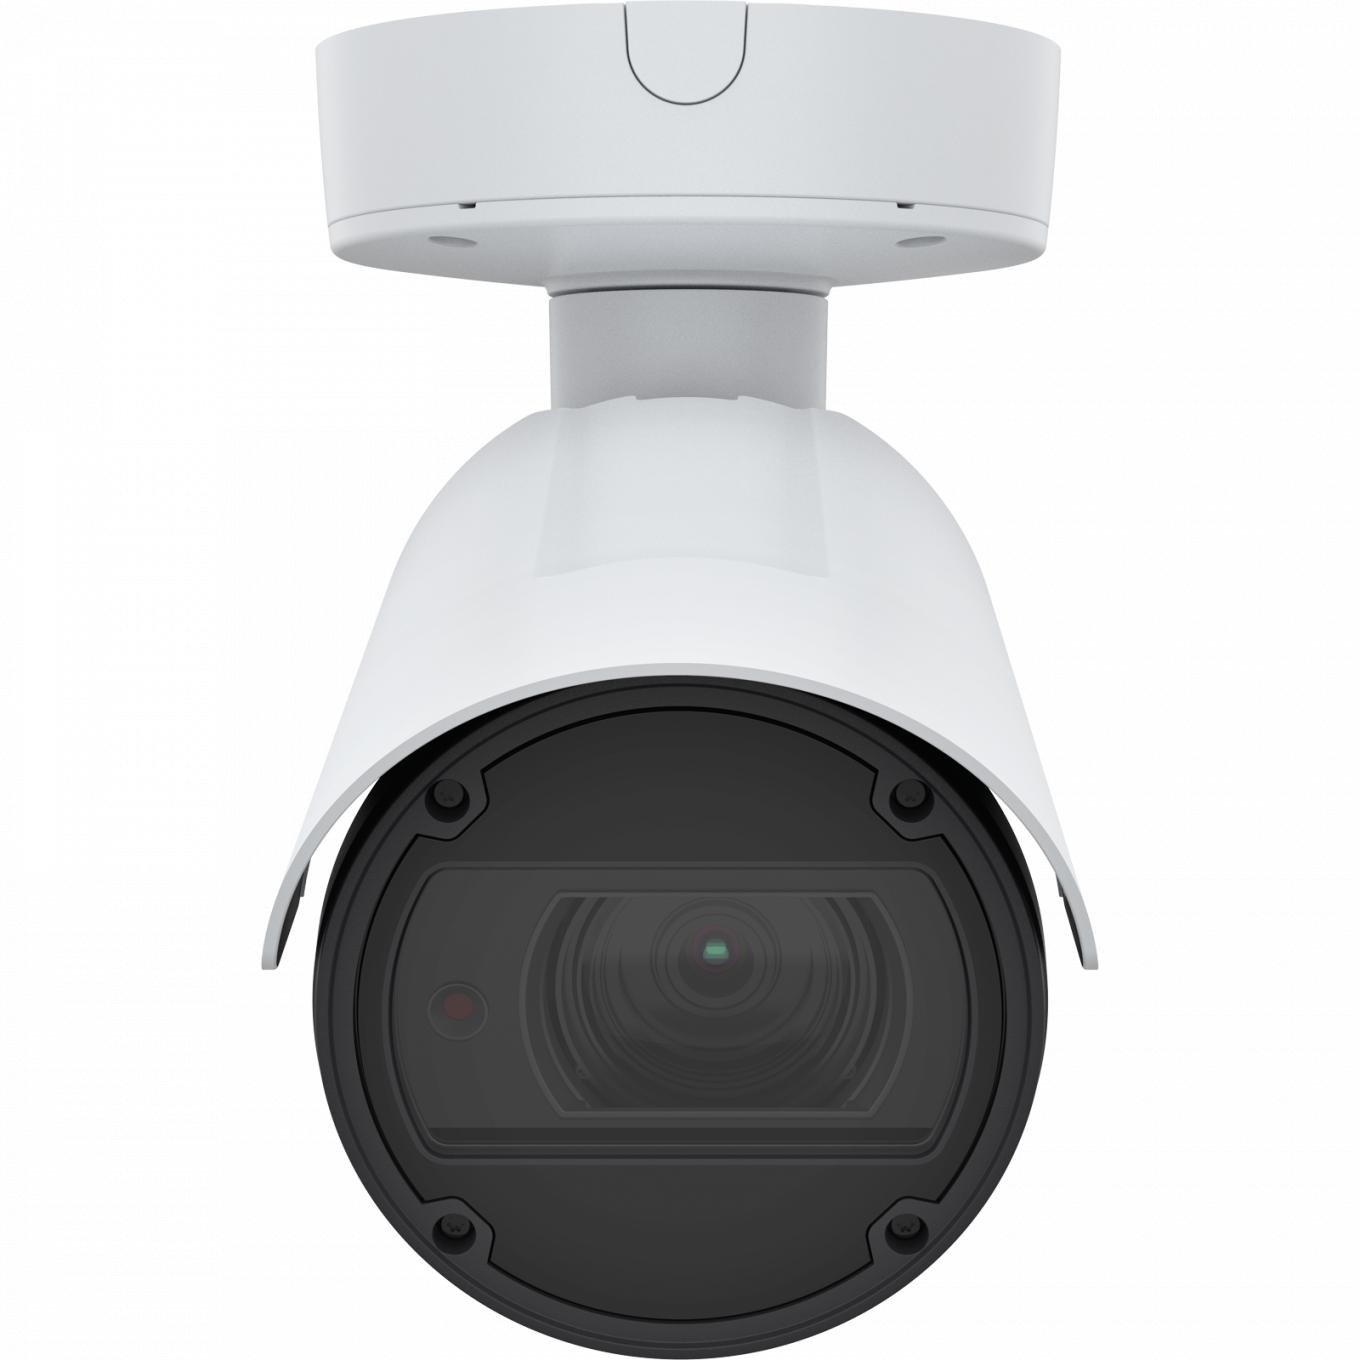 AXIS Q1798-LE IP Camera possui Zipstream e Lightfinder. O produto é visto pela frente.